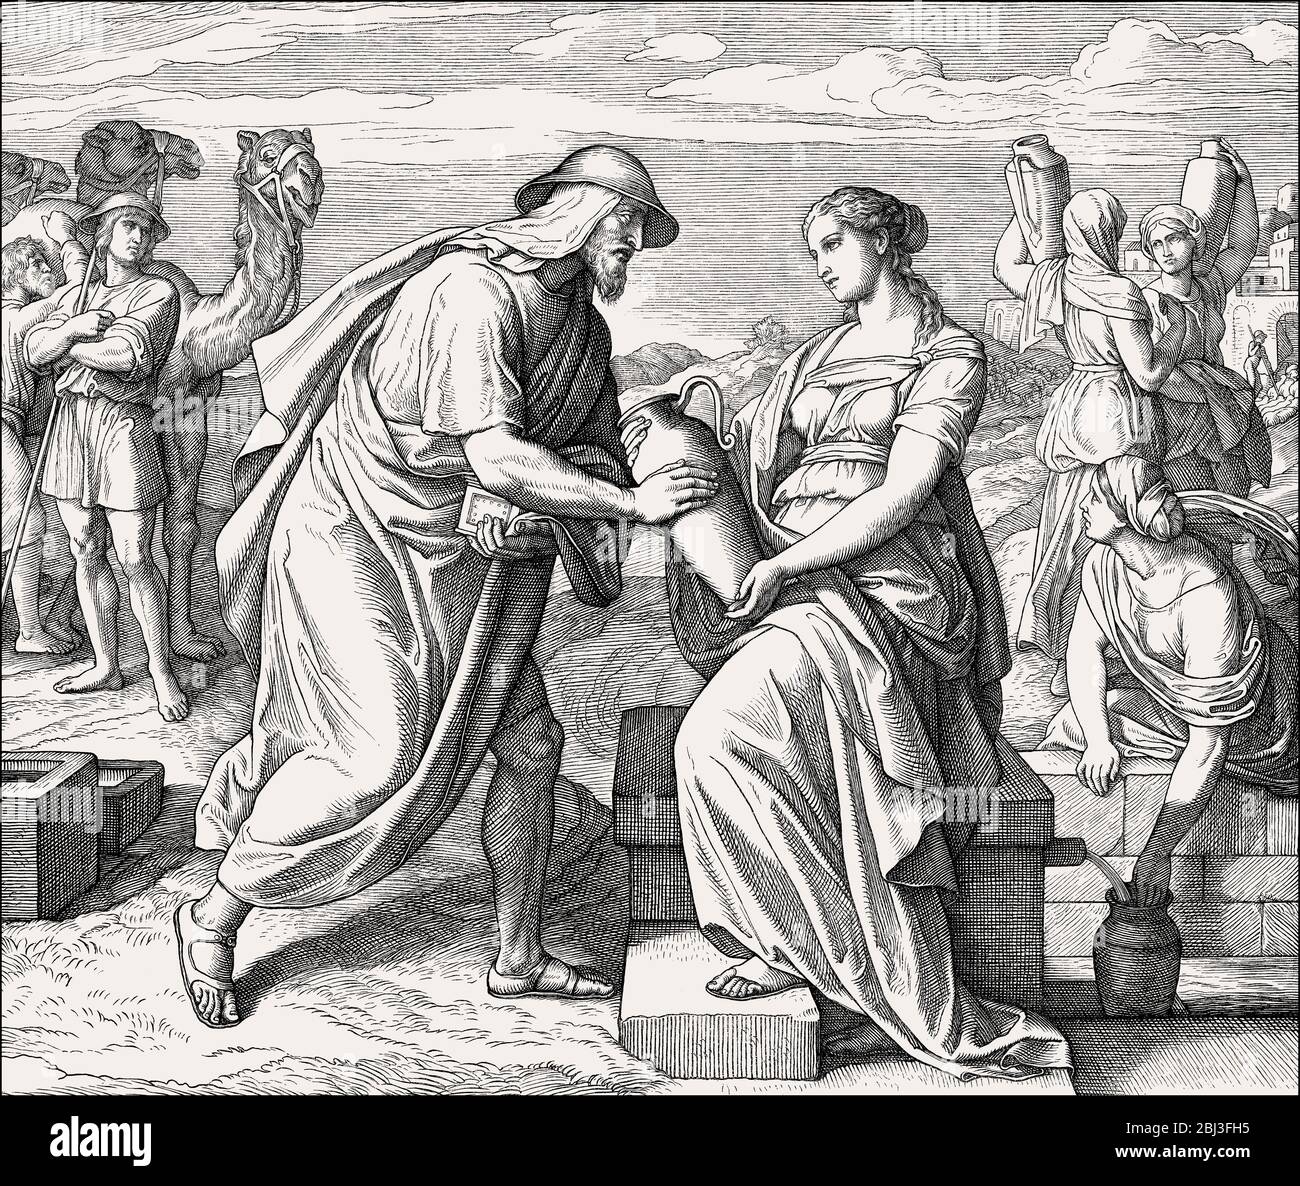 Брачное право в римском праве. Юлиус Шнорр фон Карольсфельд картины.